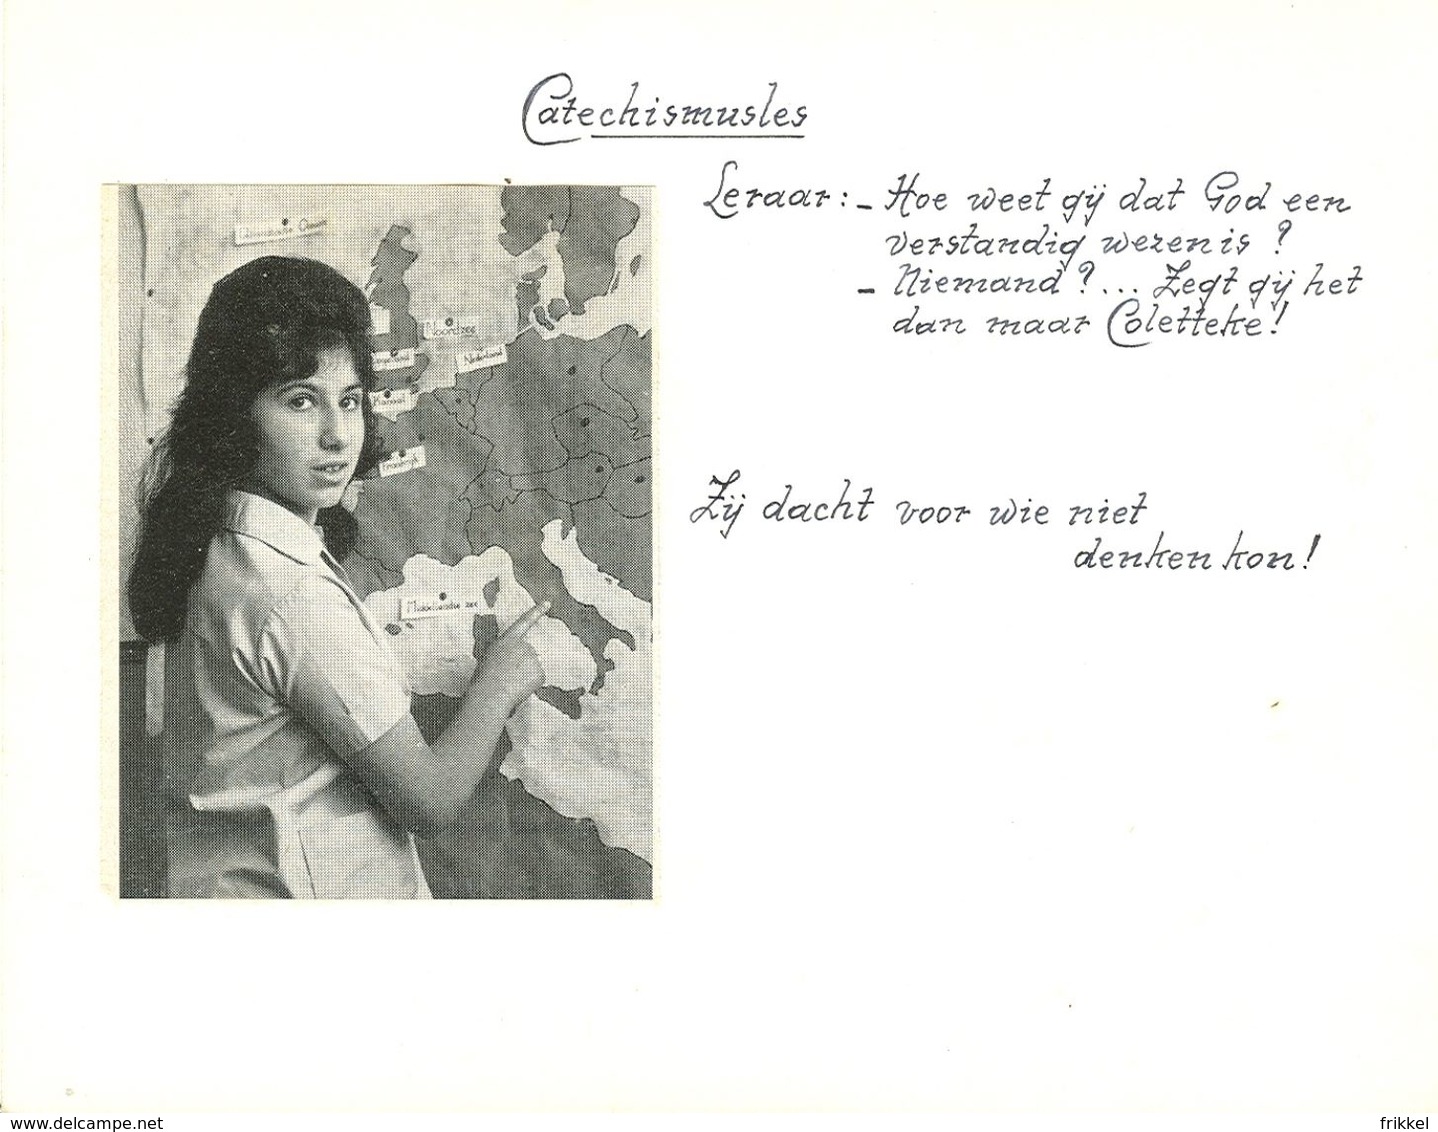 Manuscript 1965 Kasterlee Vorselaar Heverlee Oostmalle Schoten 25 jaar Zuster Non Soeur Jubileum (21 blz van 14x18cm)